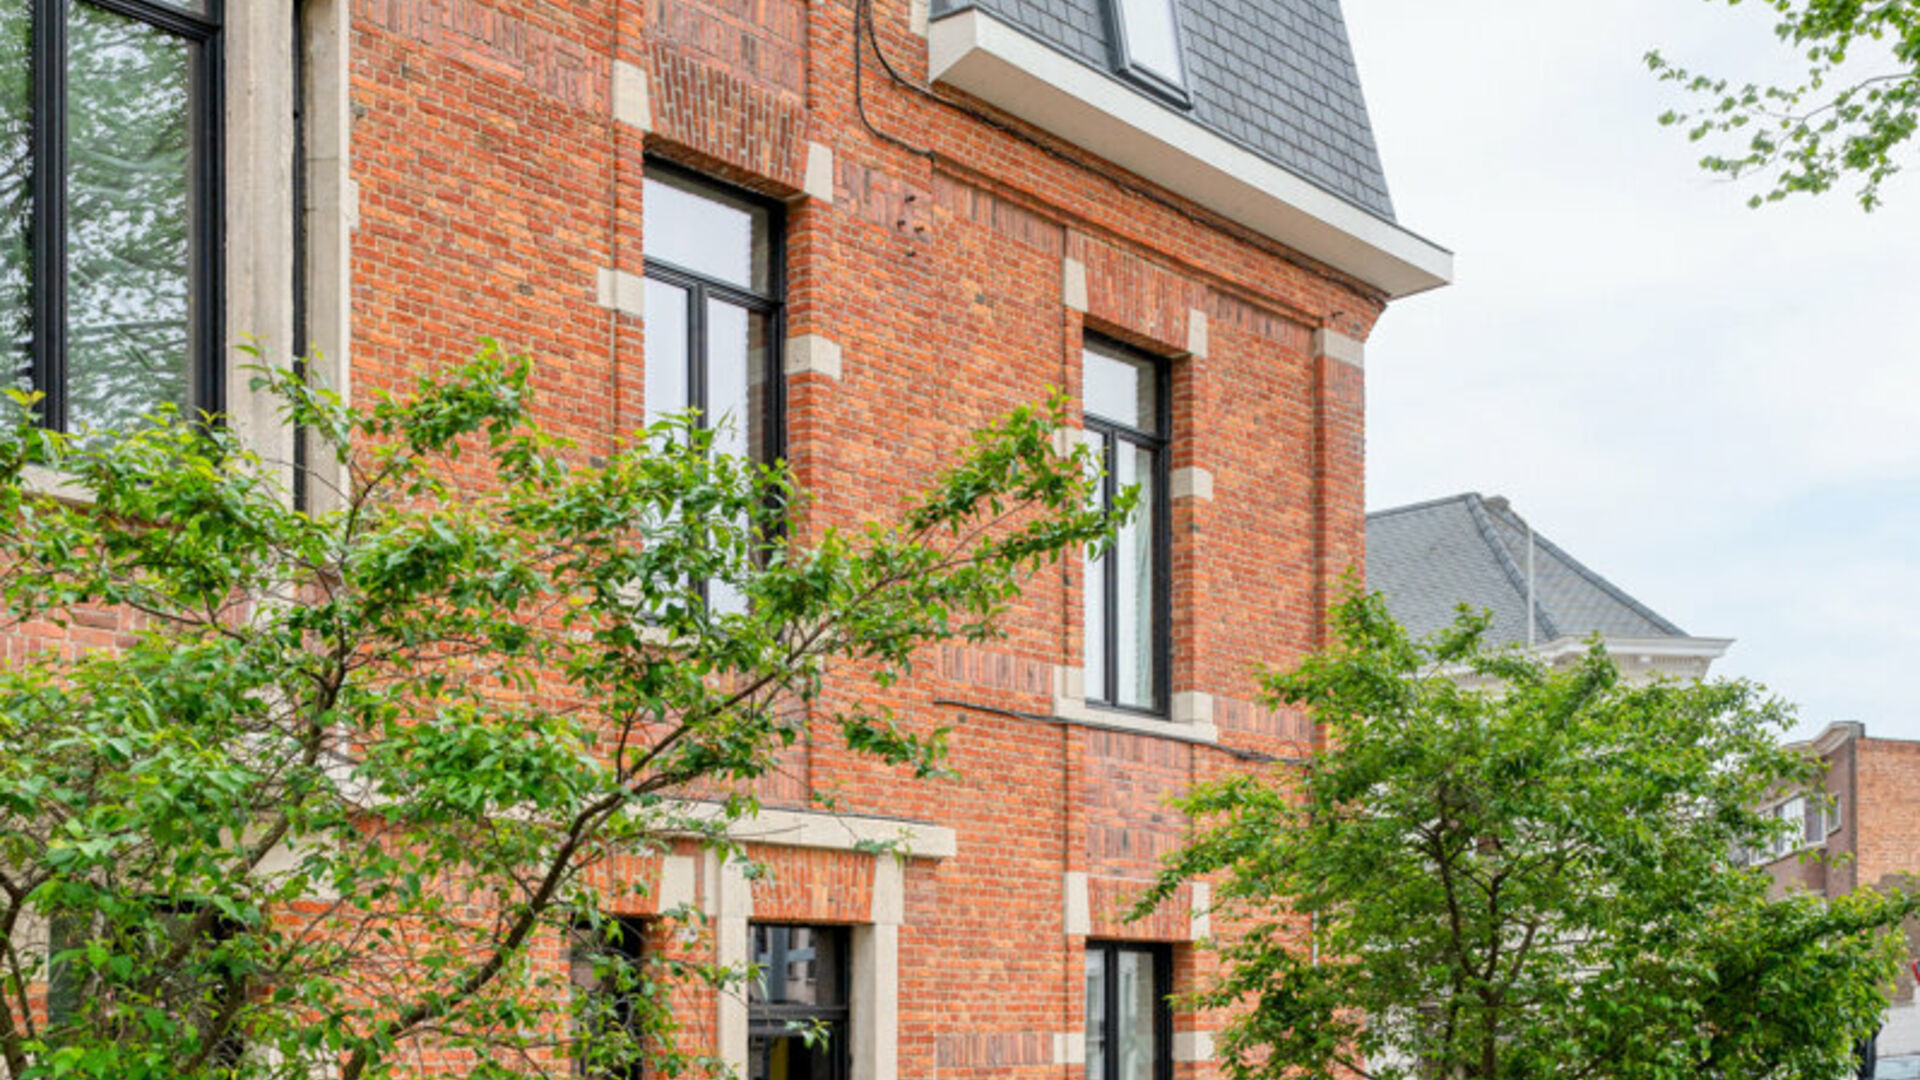 Apartment block for sale in Leuven